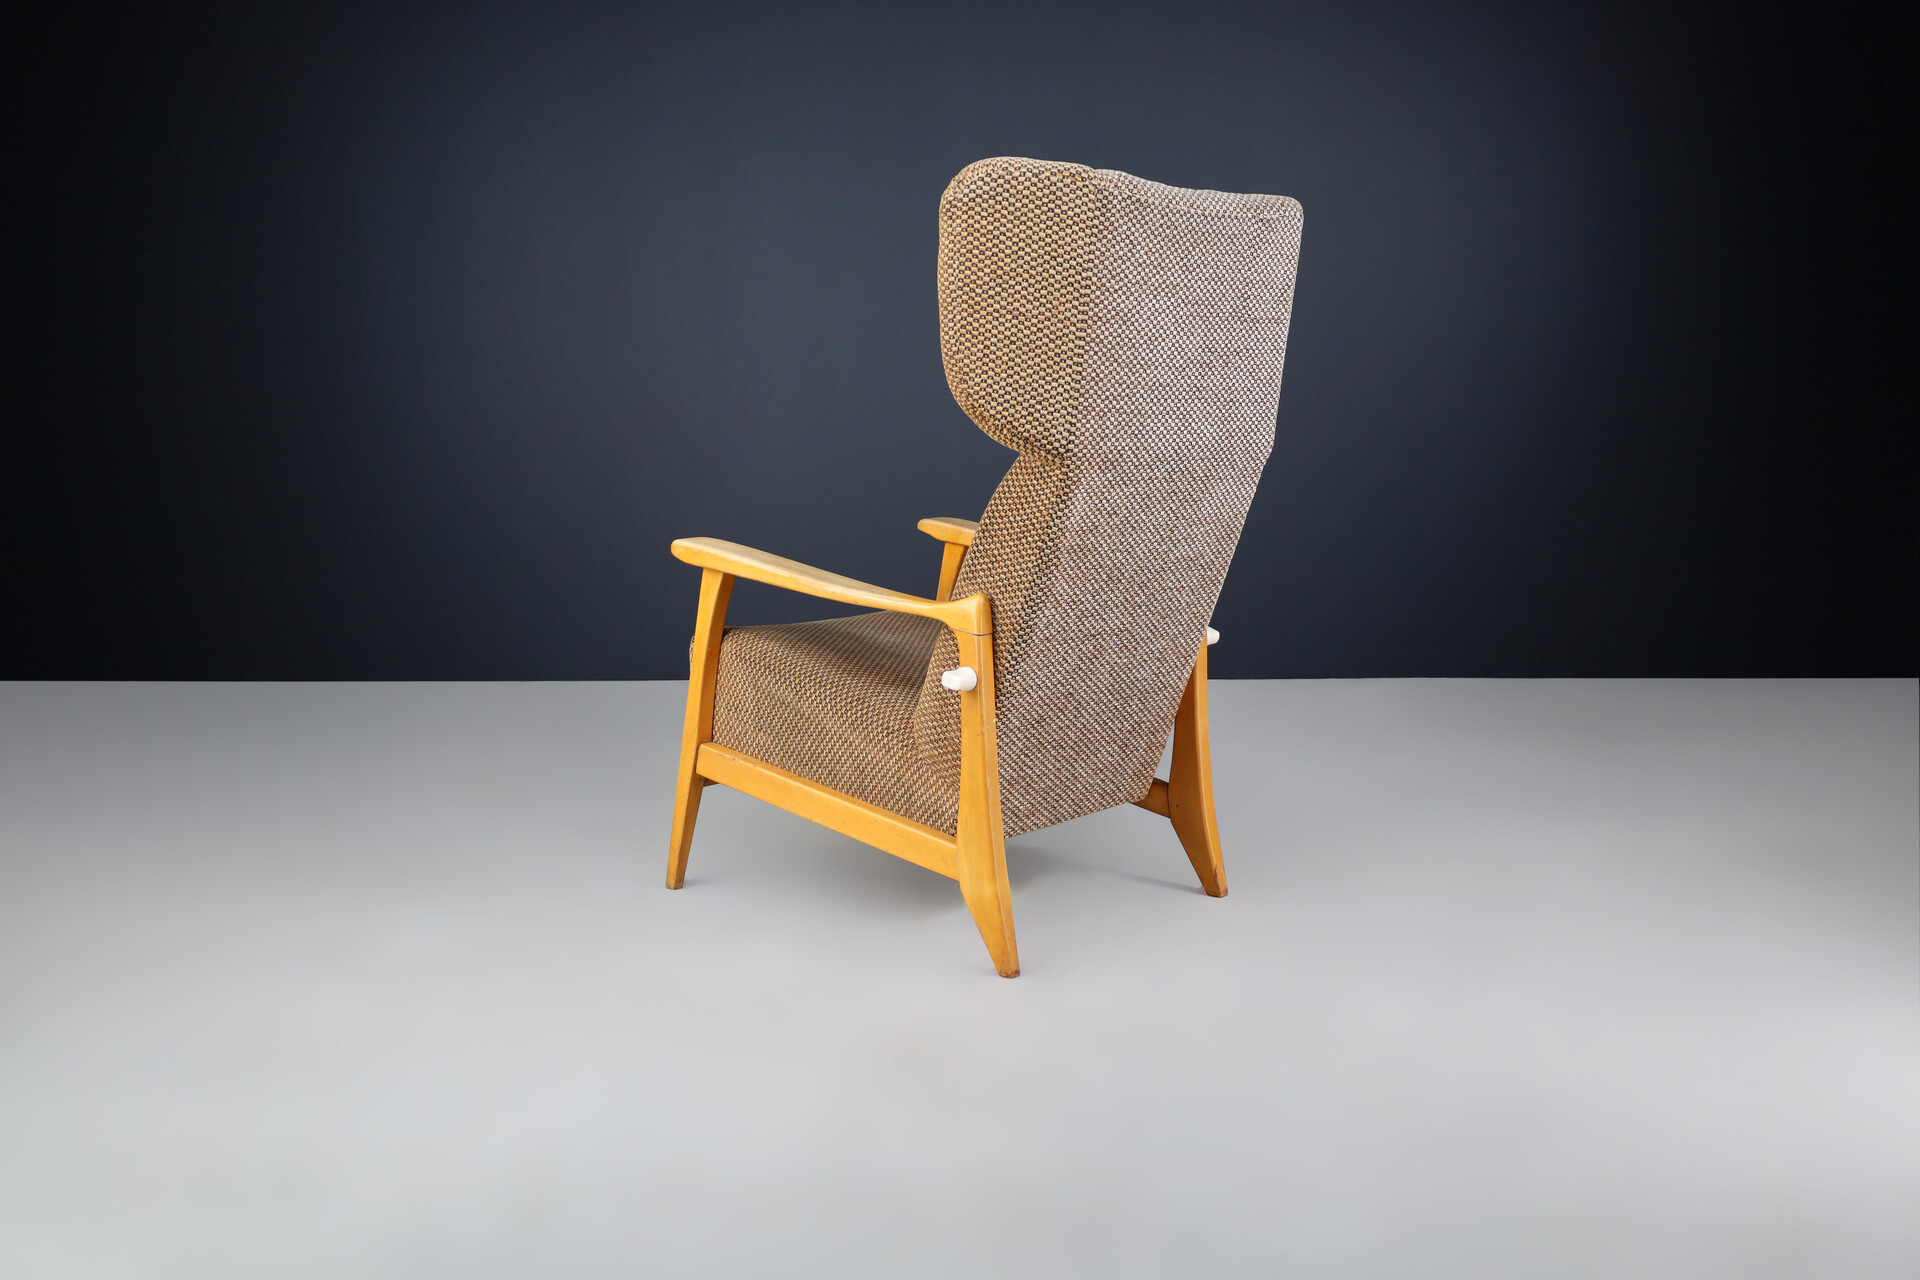 Mid century modern Wingback Lounge Chair by Krásná jizba, Praha 1960s Mid-20th century